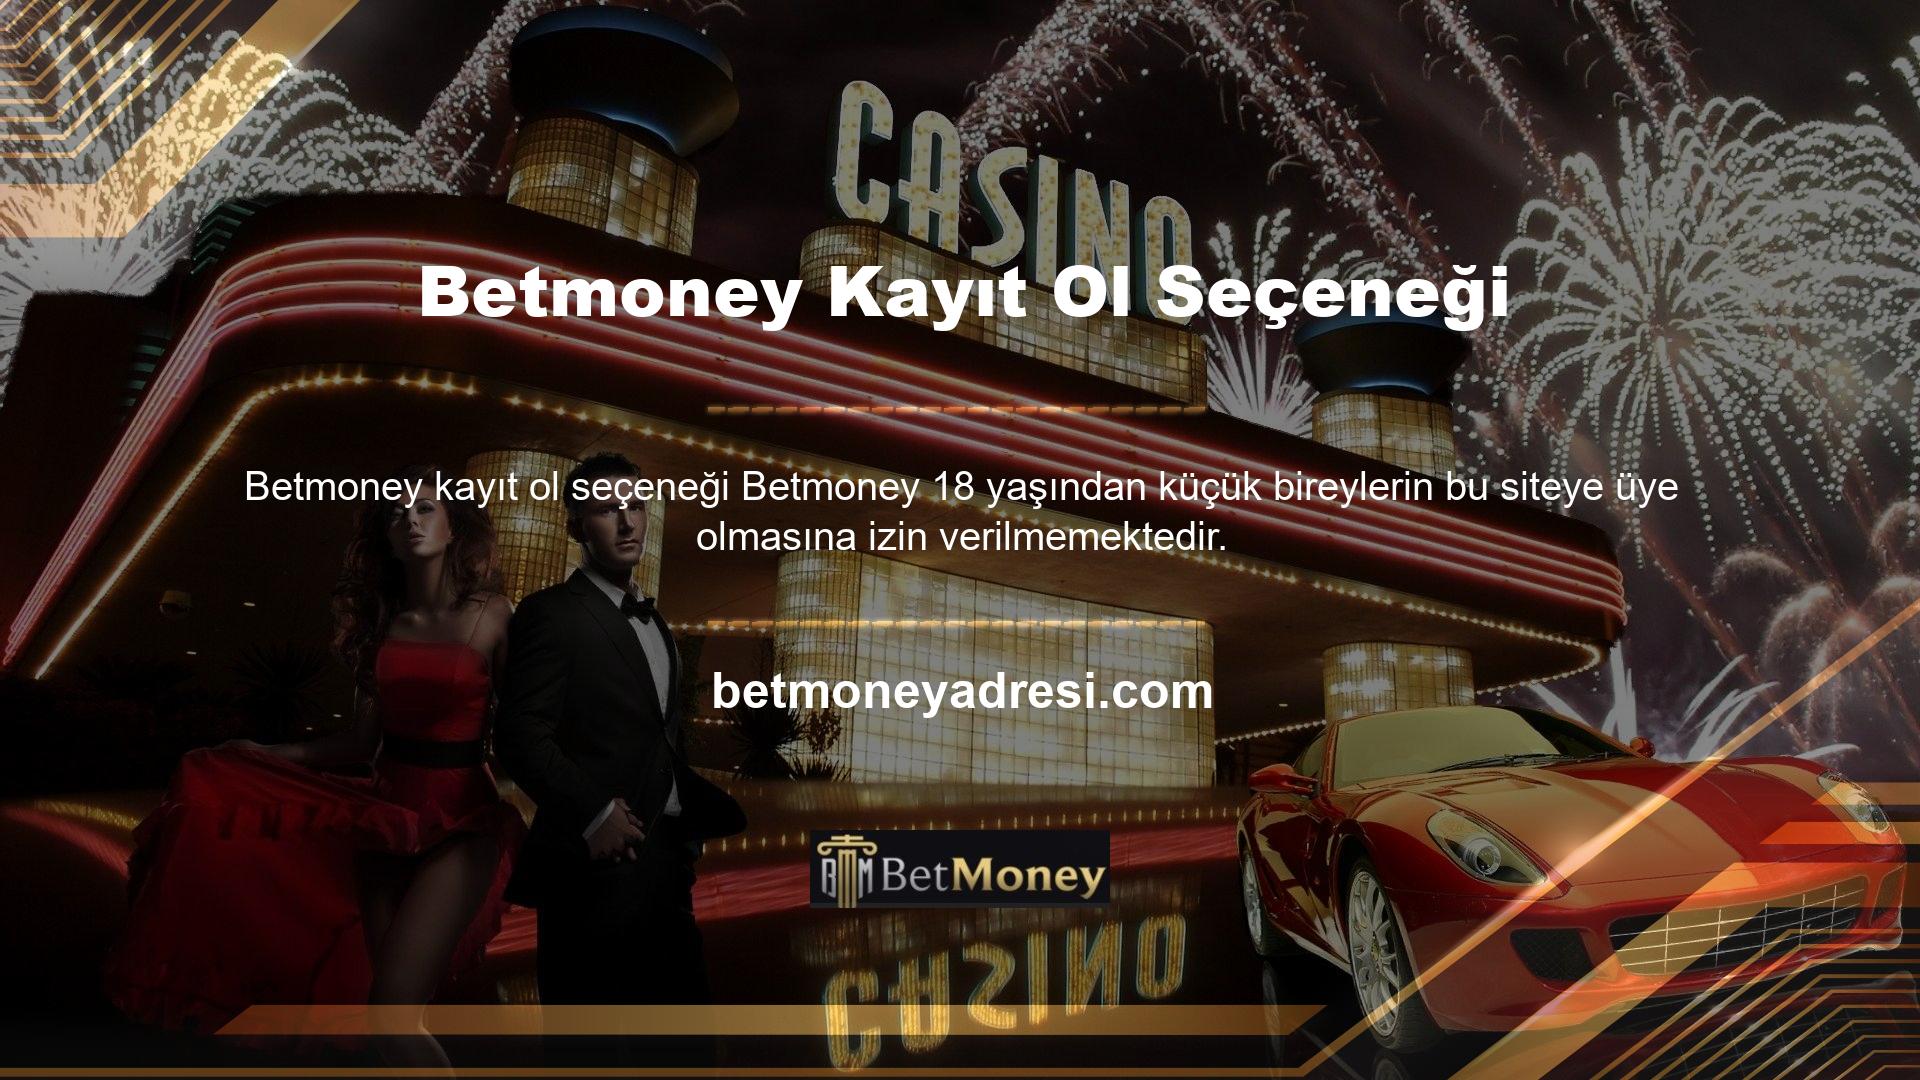 Betmoney sitesine katılarak casino ve bahis alanında tercih ettiğiniz oyunların keyfini çıkarabilir, yatırım yapabilir ve yatırım işlemlerini gerçekleştirebilirsiniz